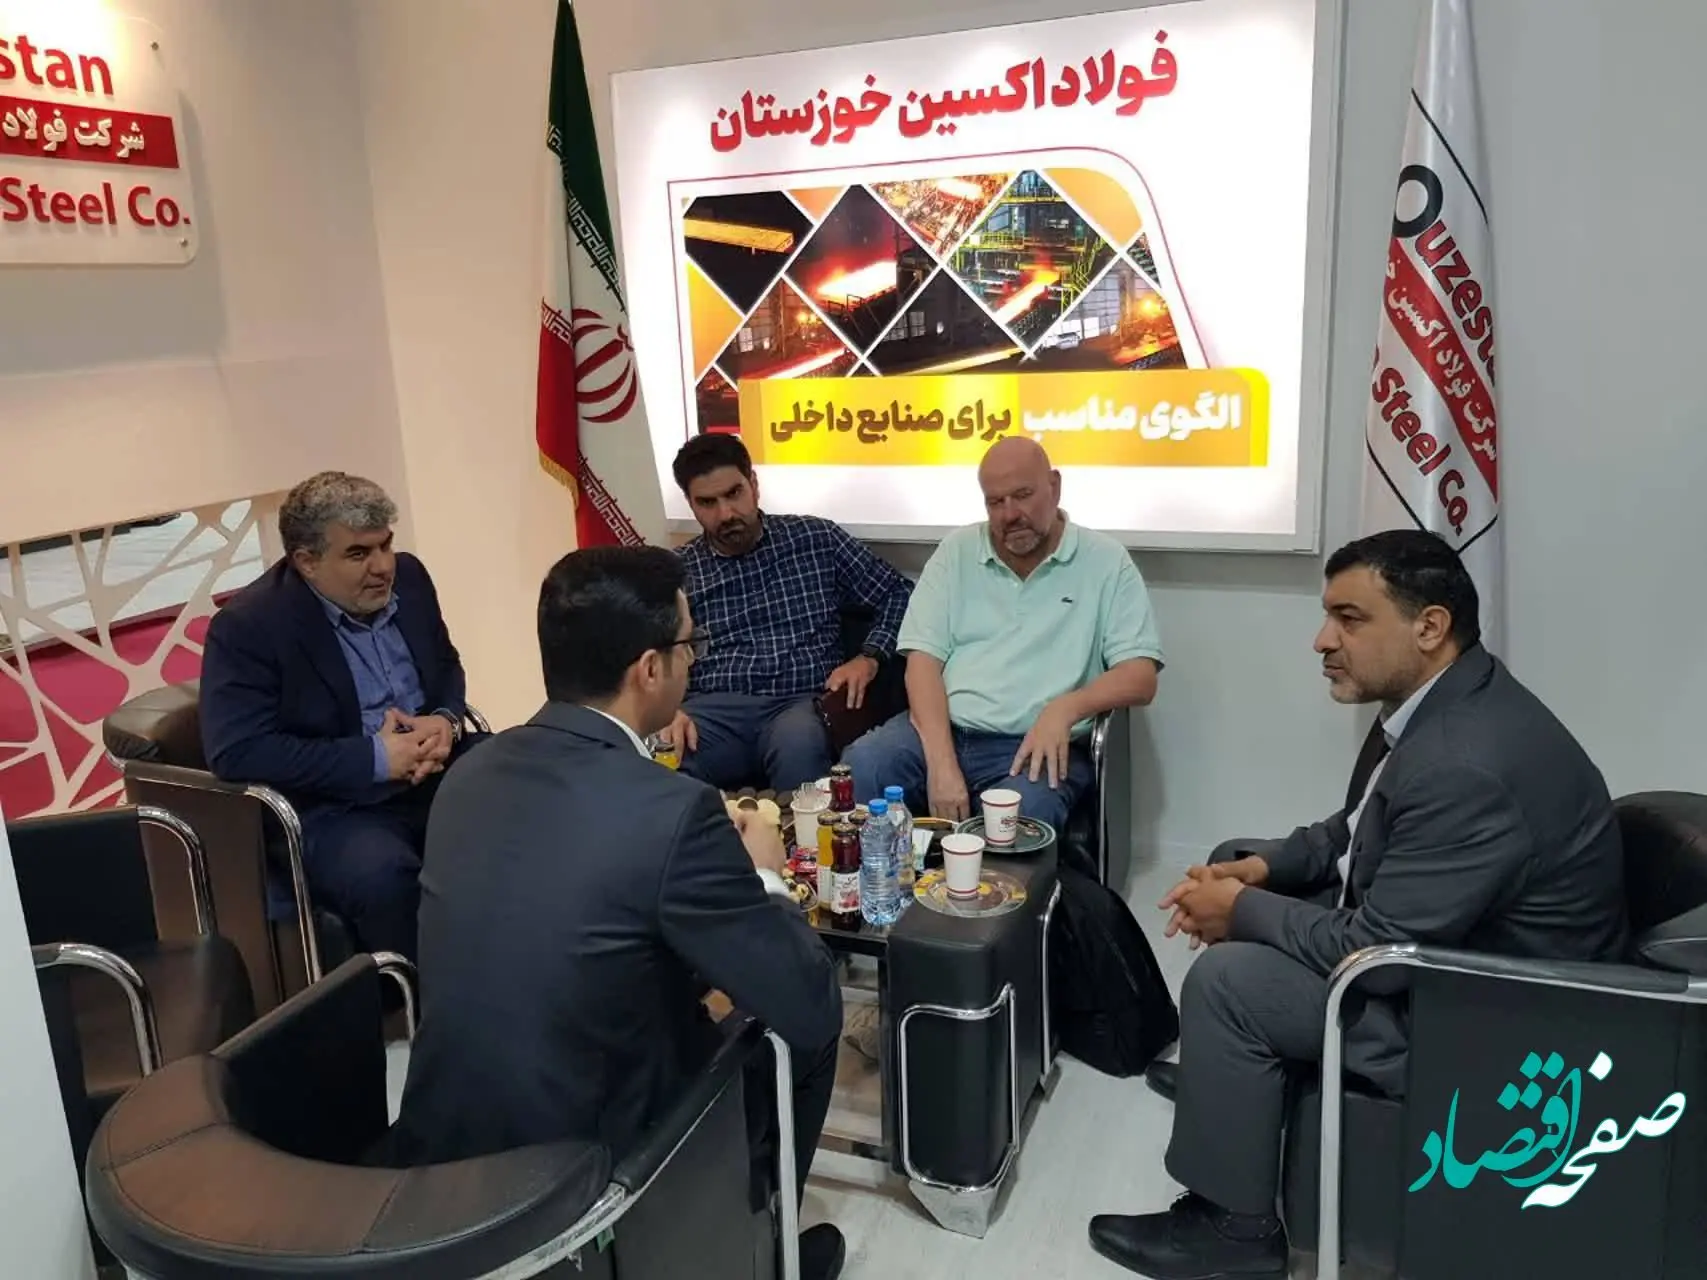 نمایش دستاوردهای صادراتی فولاد اکسین خوزستان در نمایشگاه ایران اکسپو